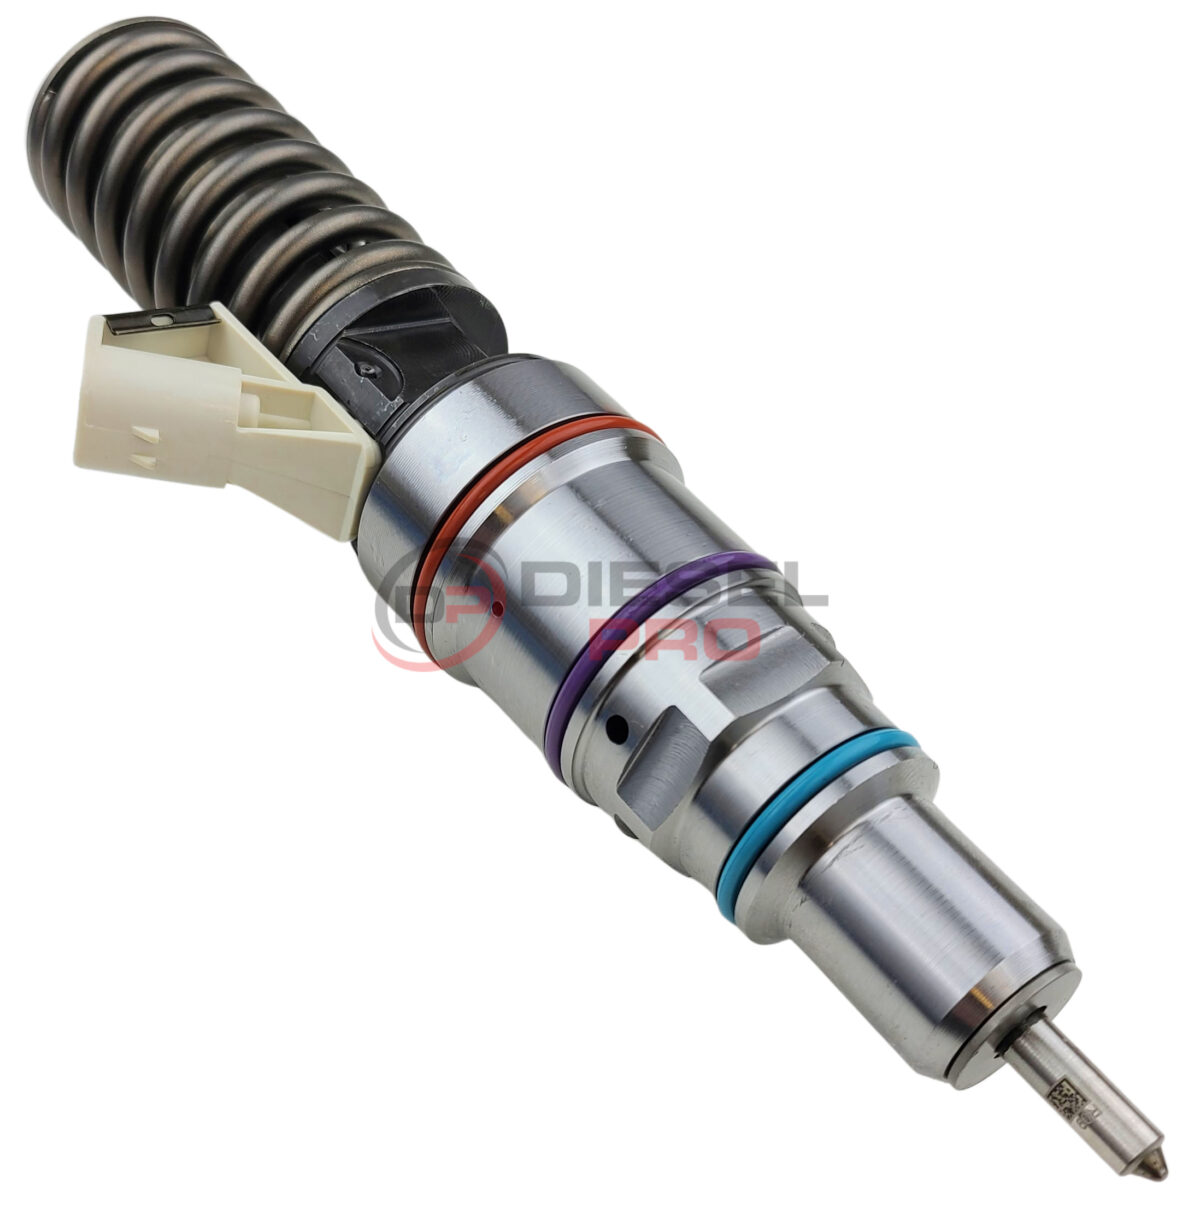 R414703003 | Detroit Diesel Series 60 14.0L Fuel Injector